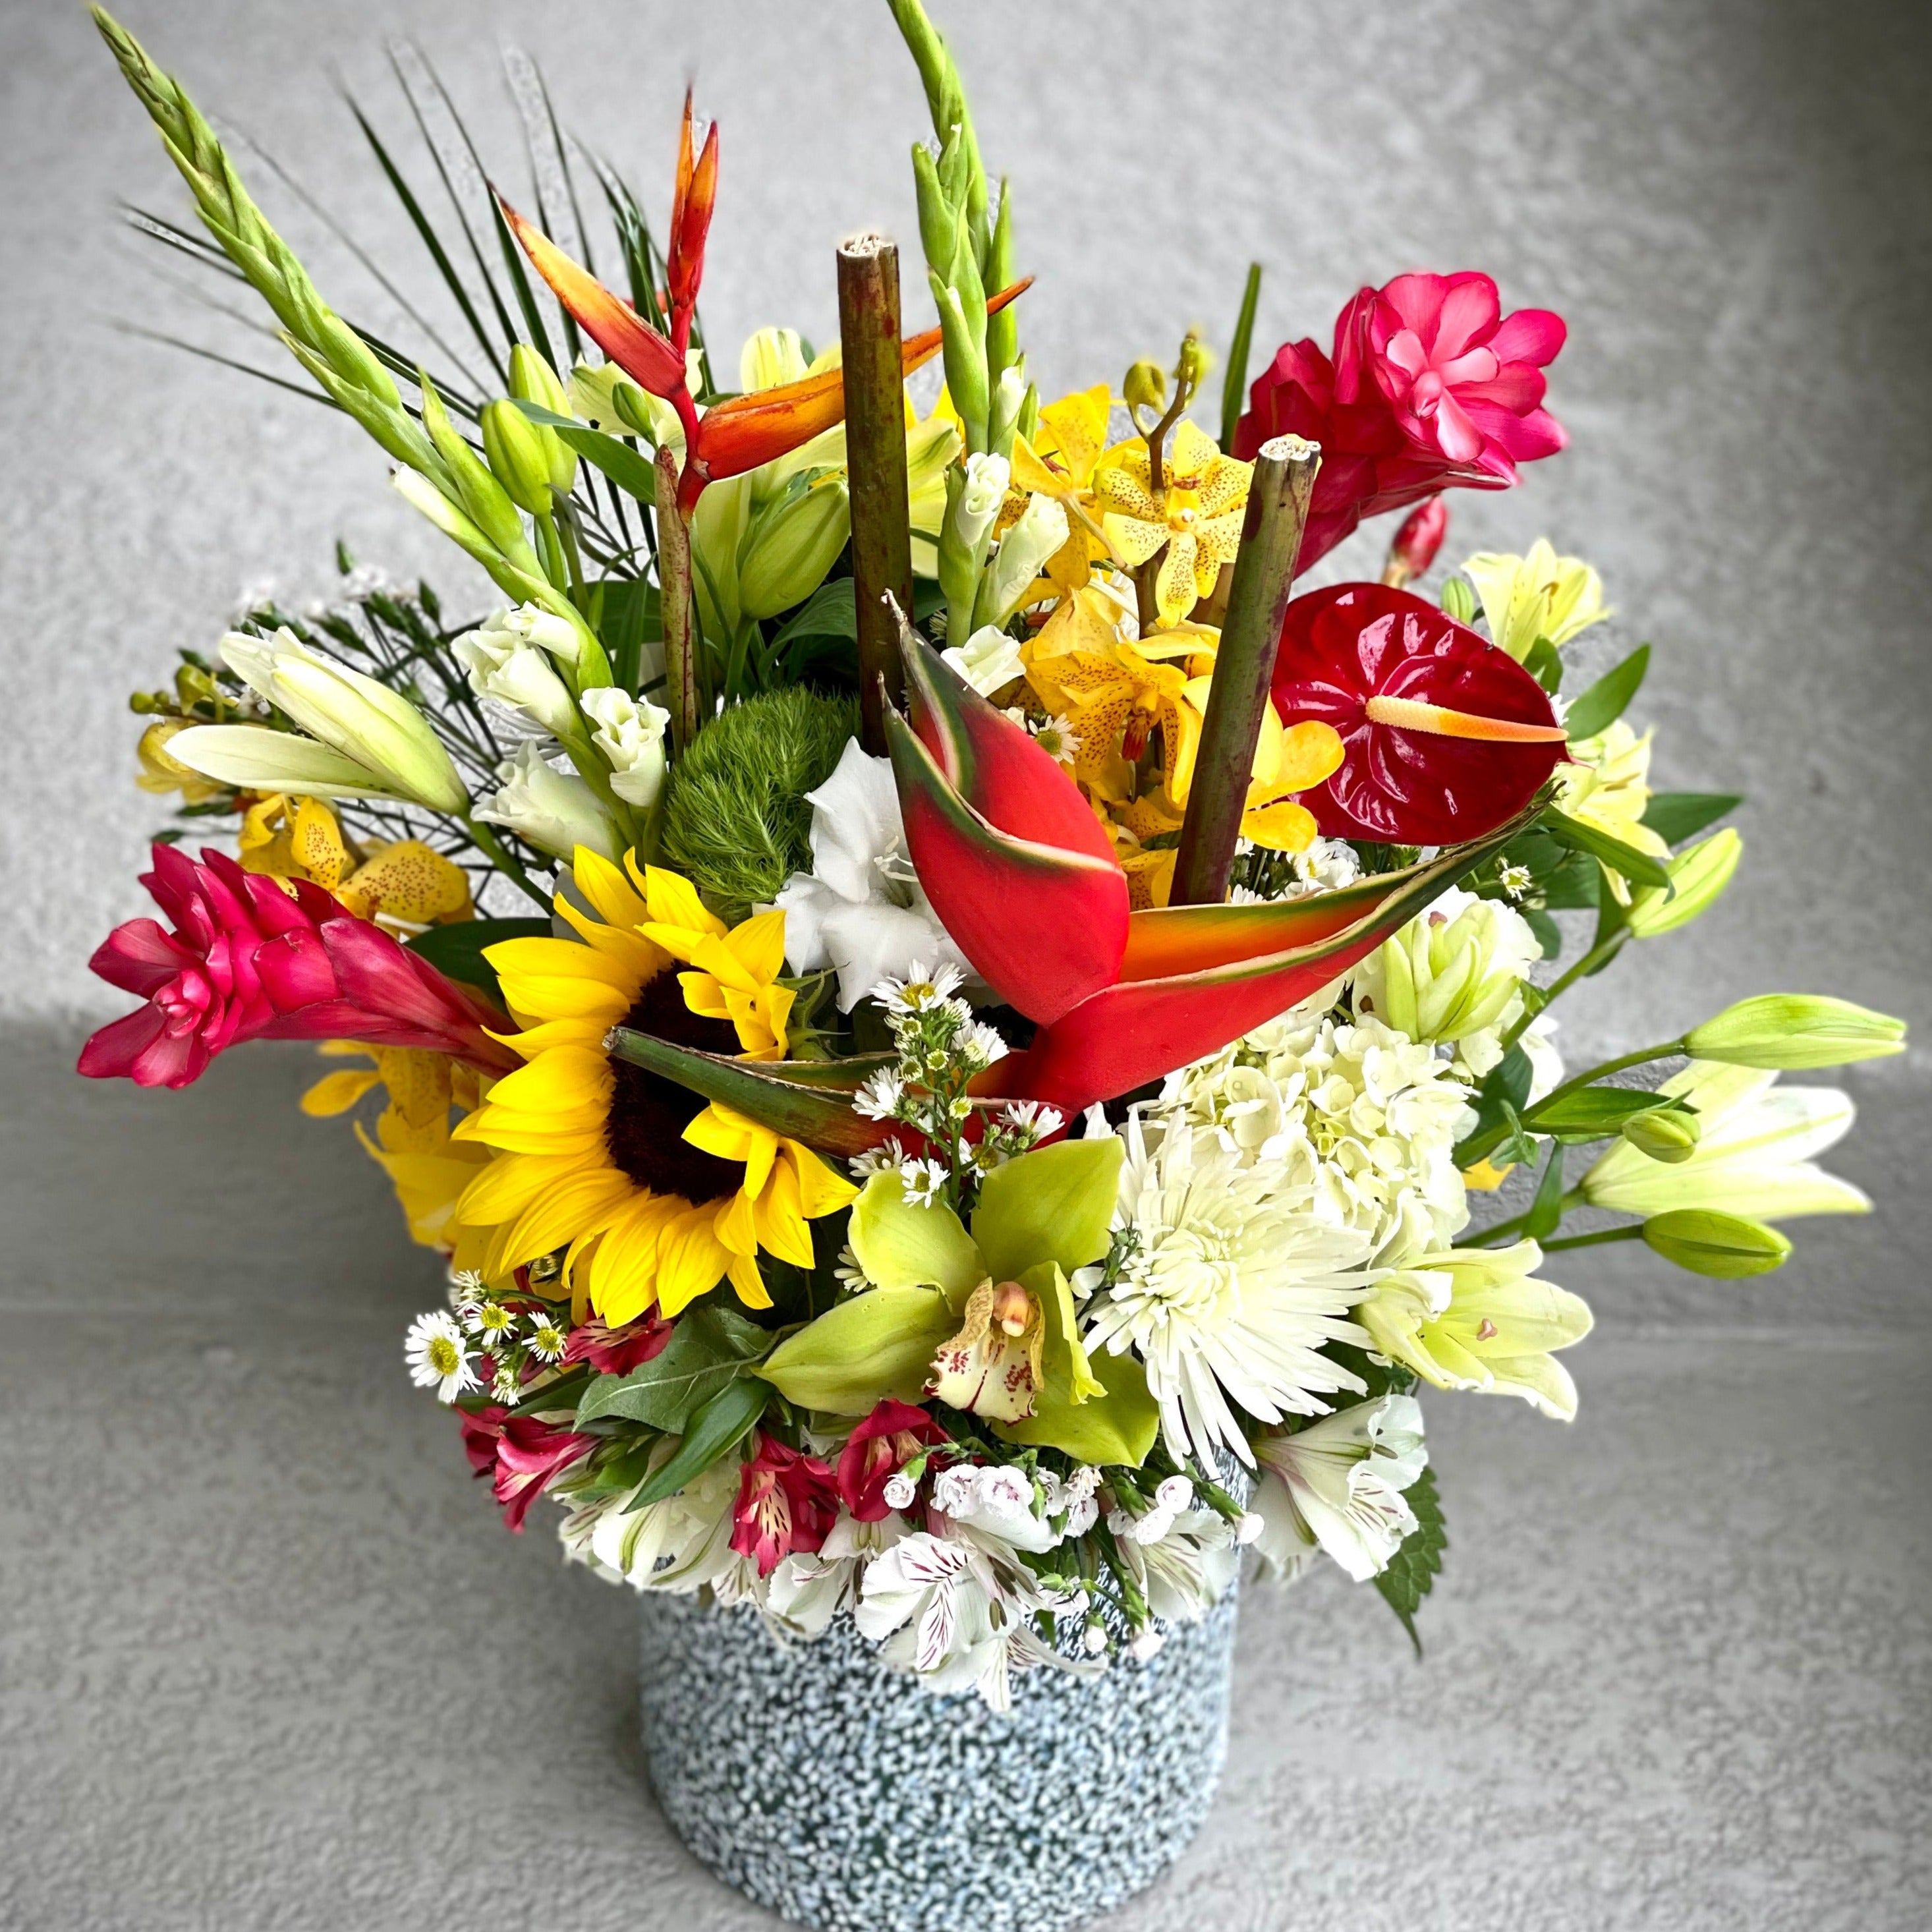 Tropical Florist choice arrangement in a vase